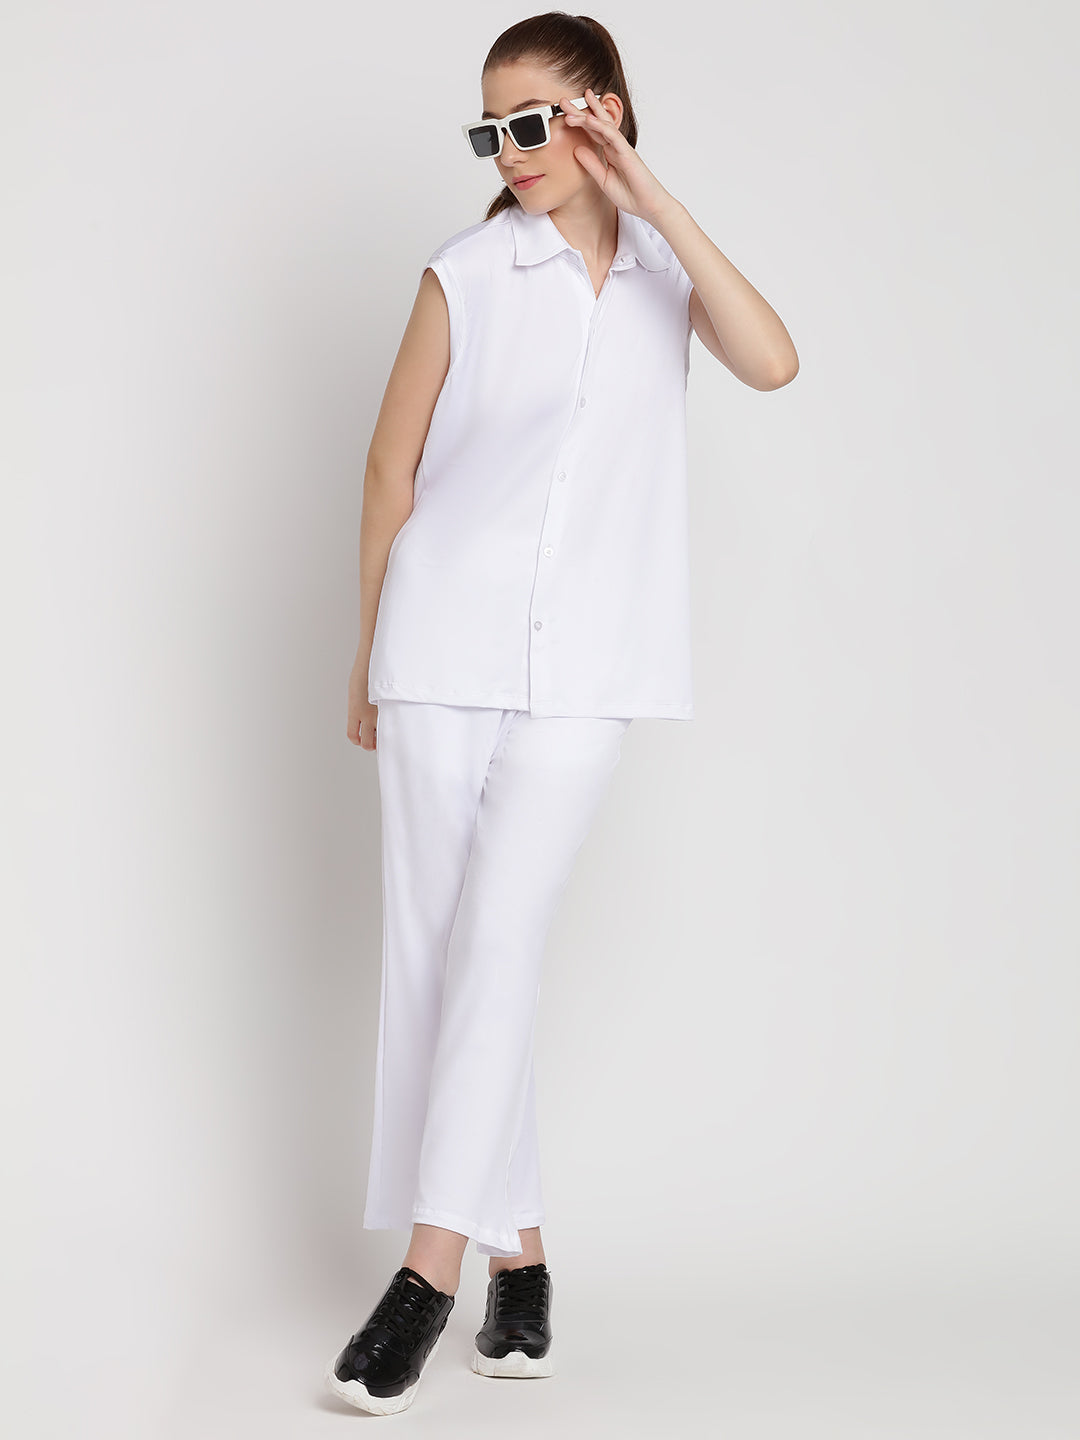 Zen Flow Pants & Shirt Set - White